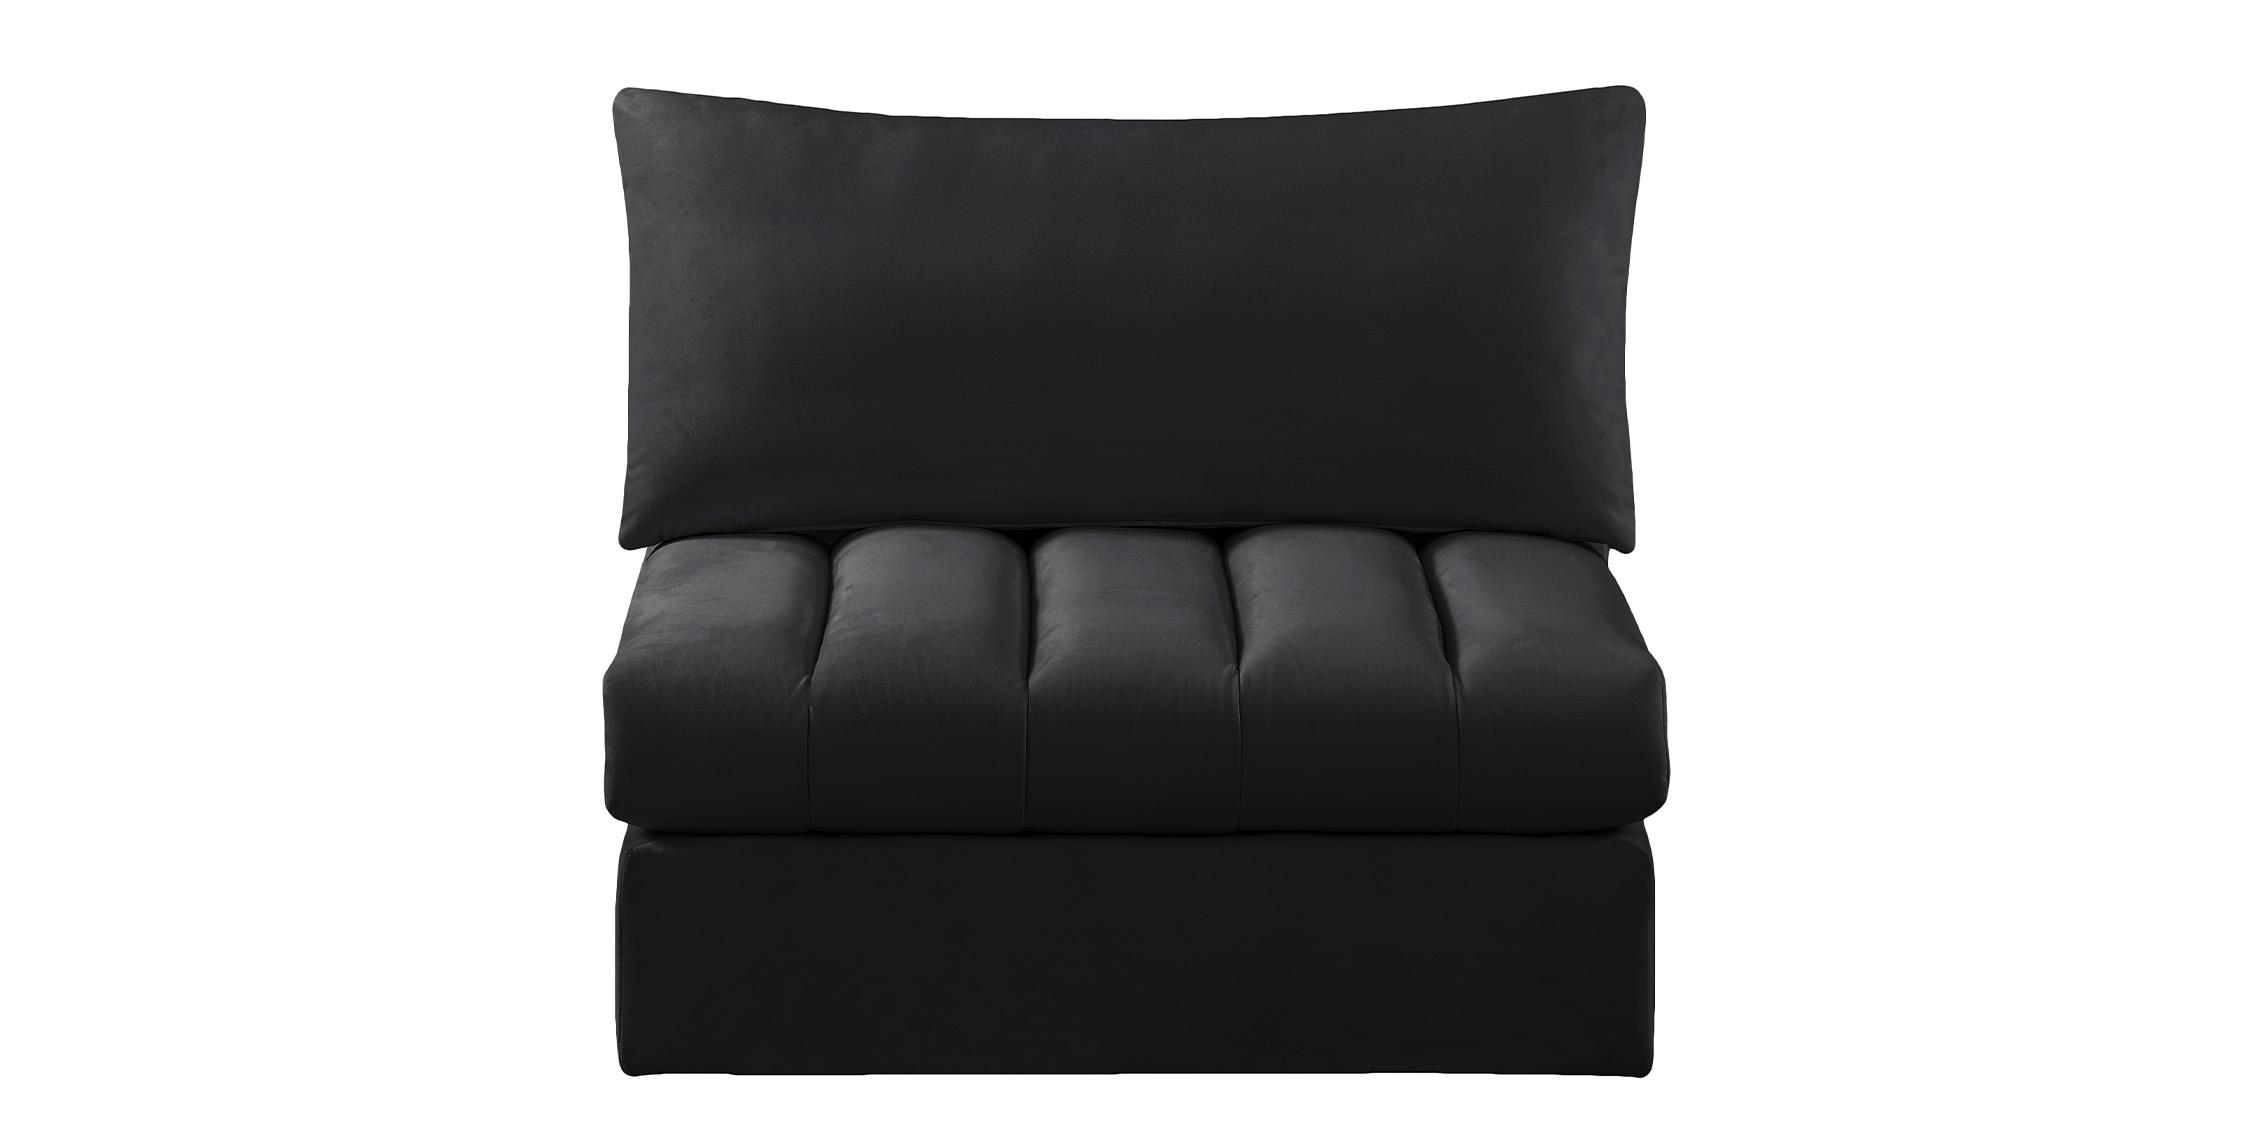 

    
Meridian Furniture JACOB 649Black-Armless Modular Armless Chair Black 649Black-Armless
